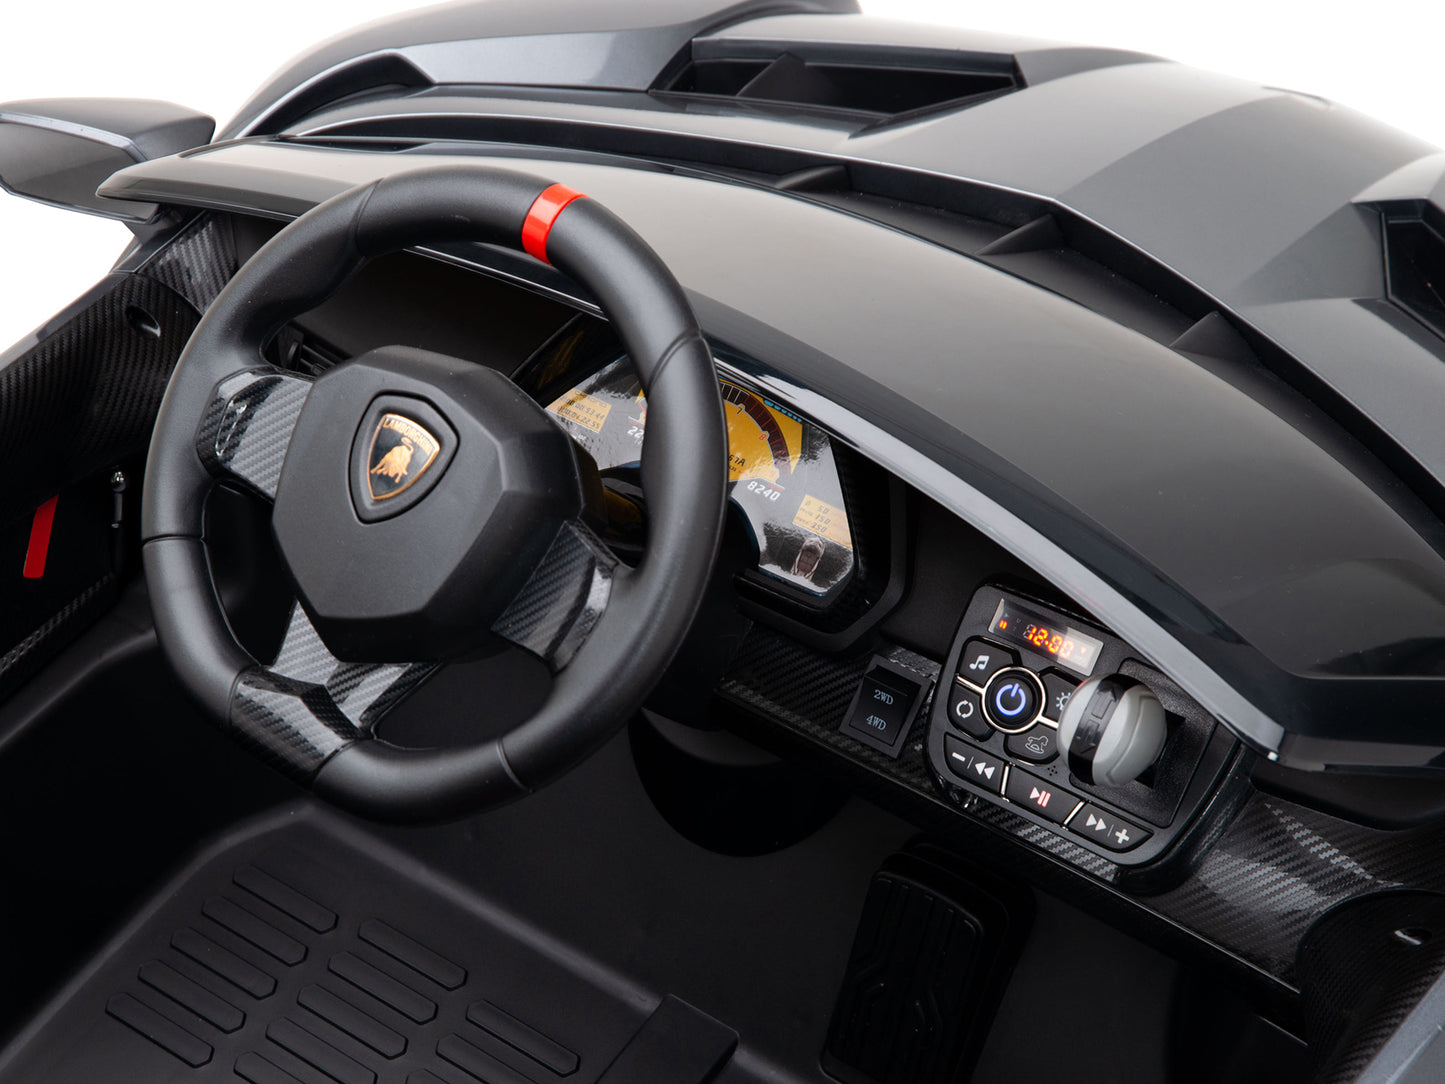 2WD / AWD Kids Premium Lamborghini Veneno Ride On Car with Remote Control - Grey